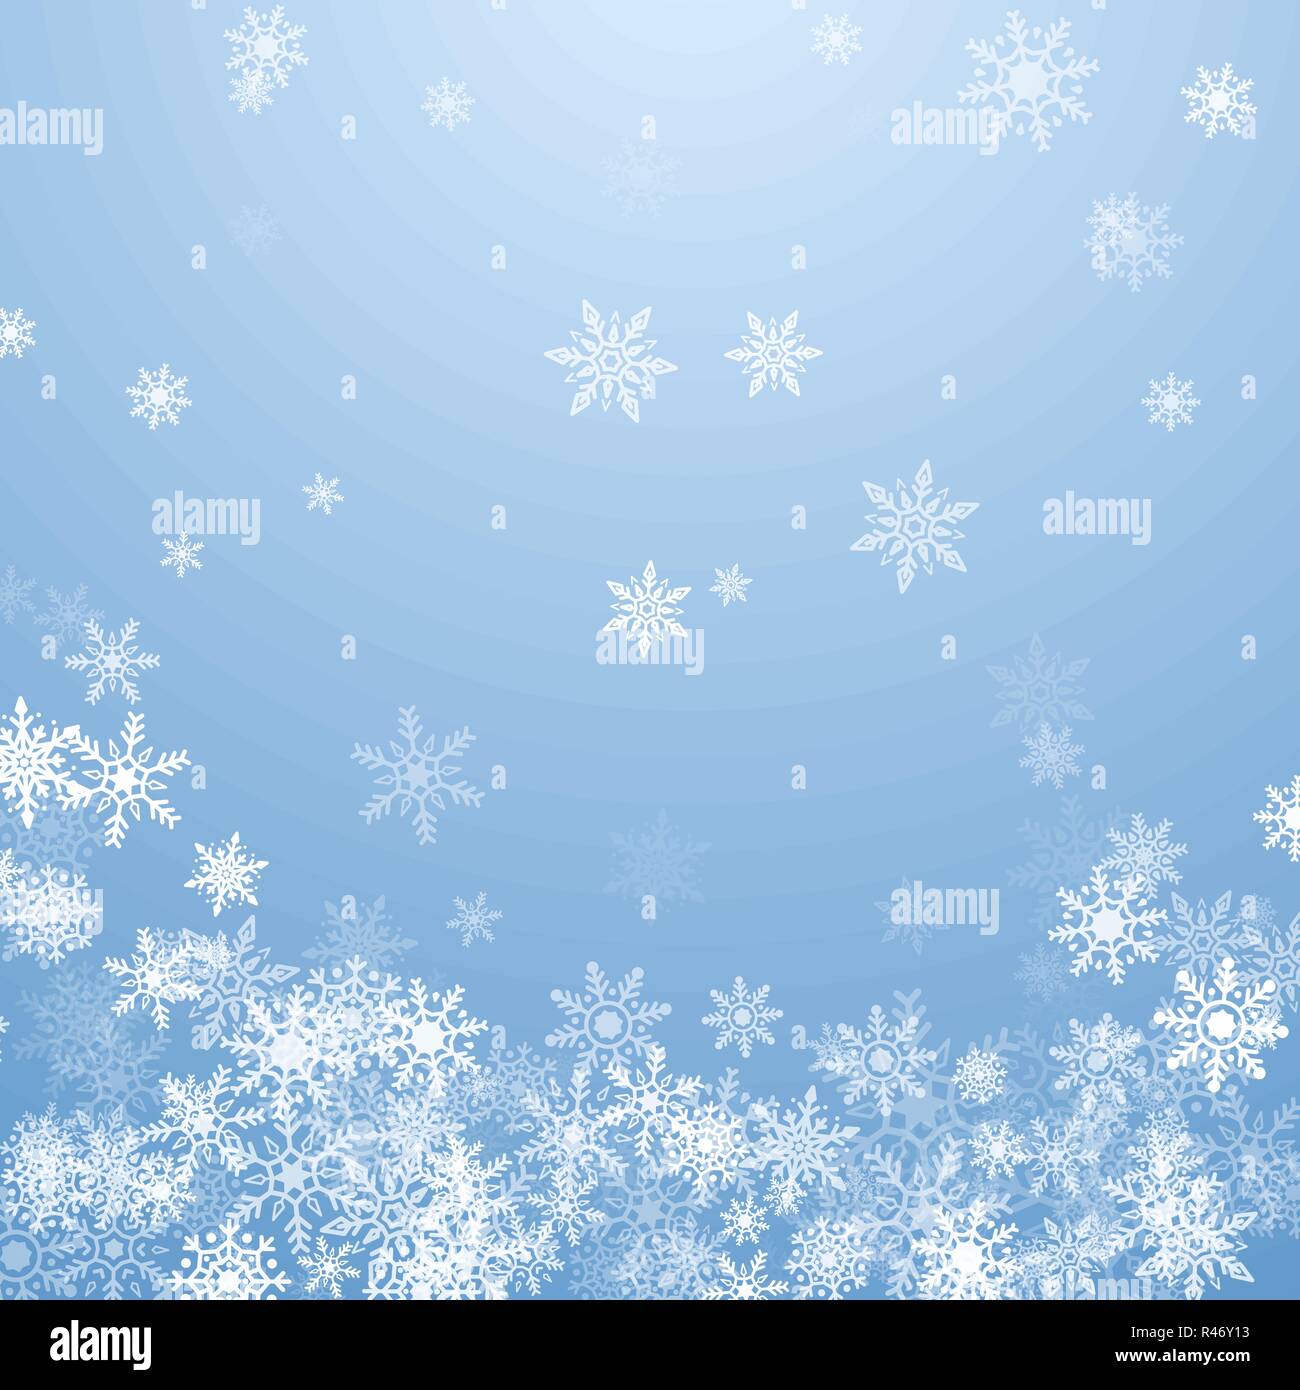 Schneeflocken fallen weiß auf blauem Hintergrund. Blau Weihnachten Schneeflocken Hintergrund. Vector Illustration Stock Vektor